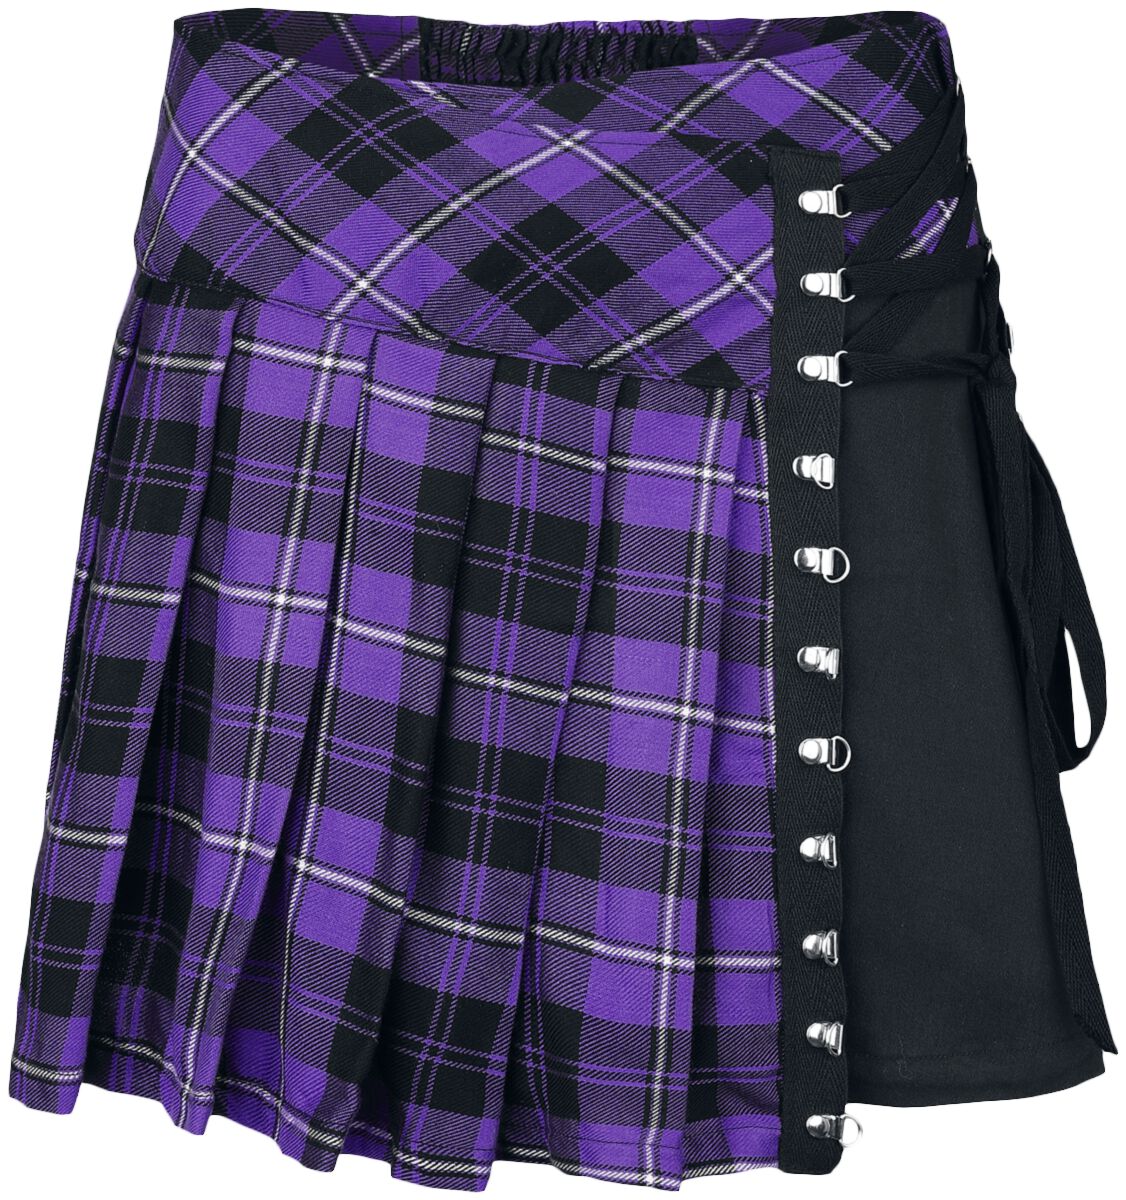 Chemical Black - Gothic Kurzer Rock - Hybrid Skirt - XS bis 4XL - für Damen - Größe L - lila/schwarz